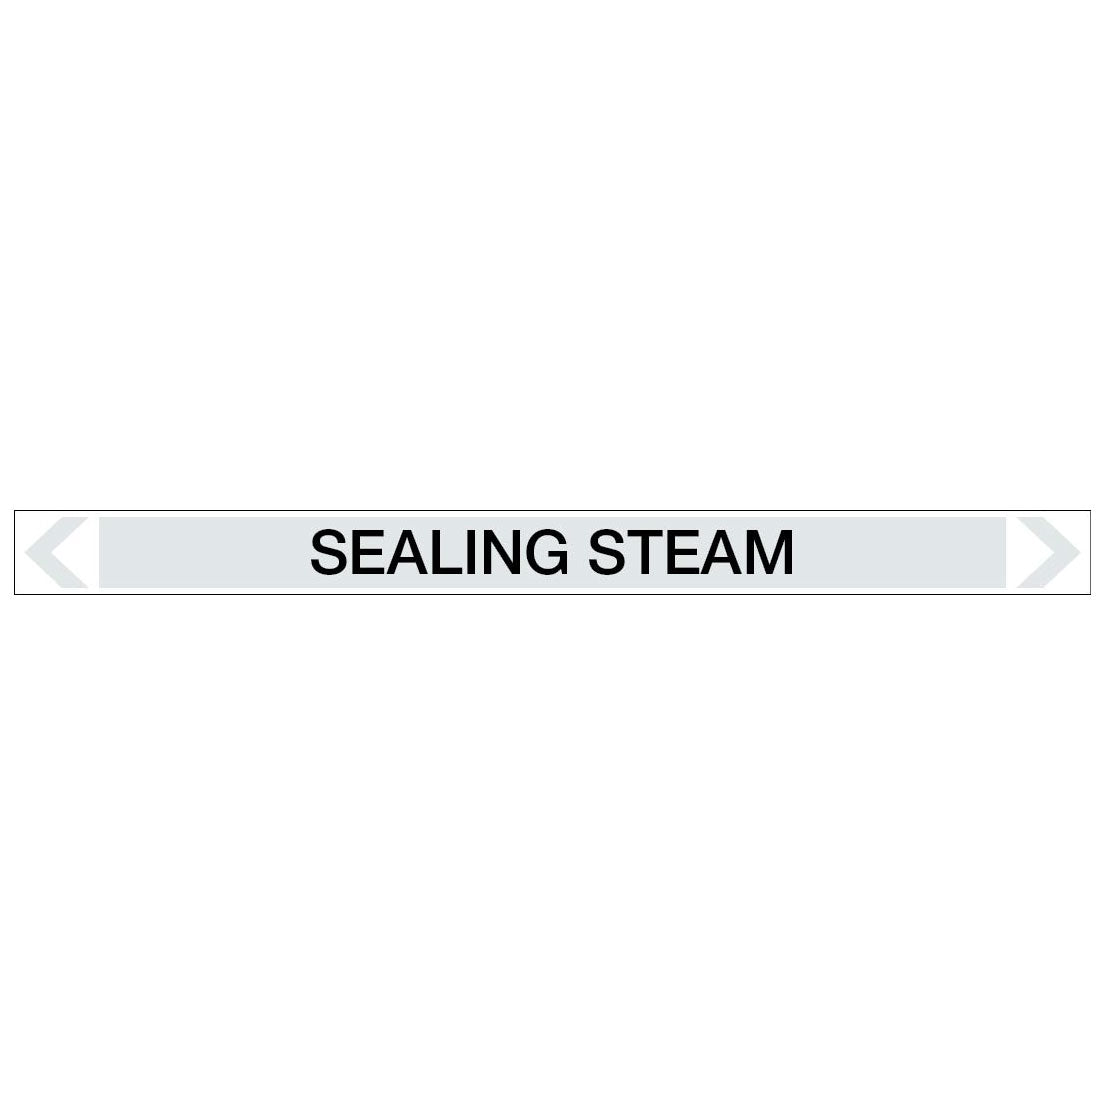 Steam - Sealing Steam - Pipe Marker Sticker